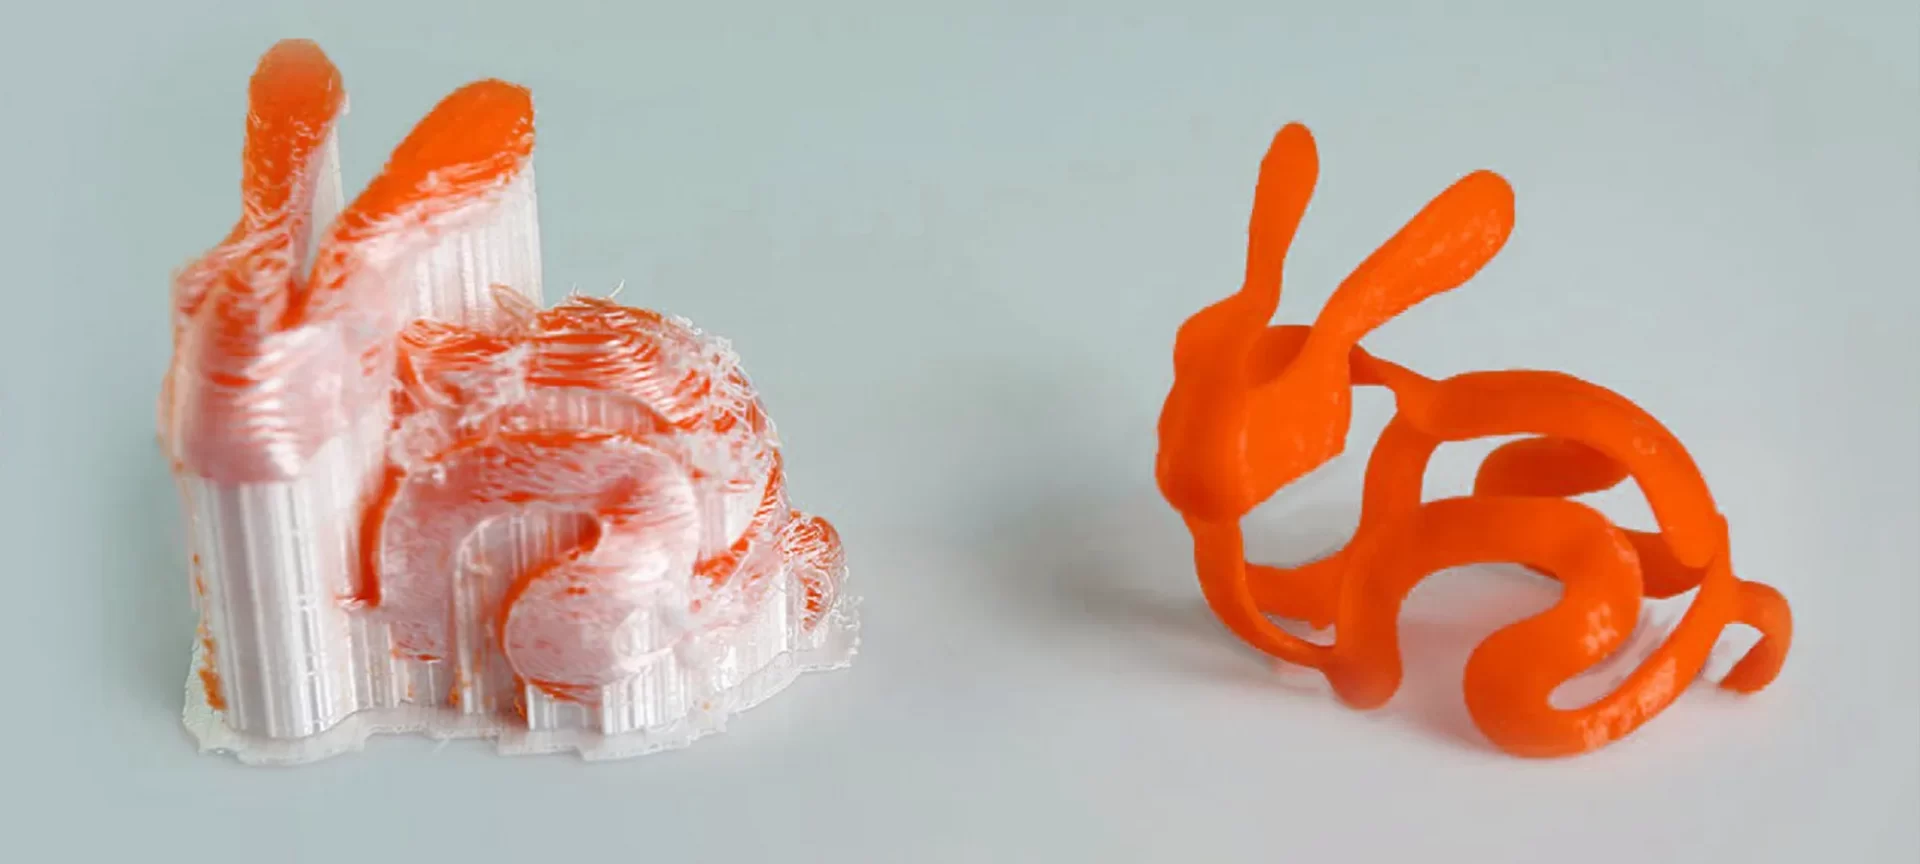 PVA 3D printed rabbit